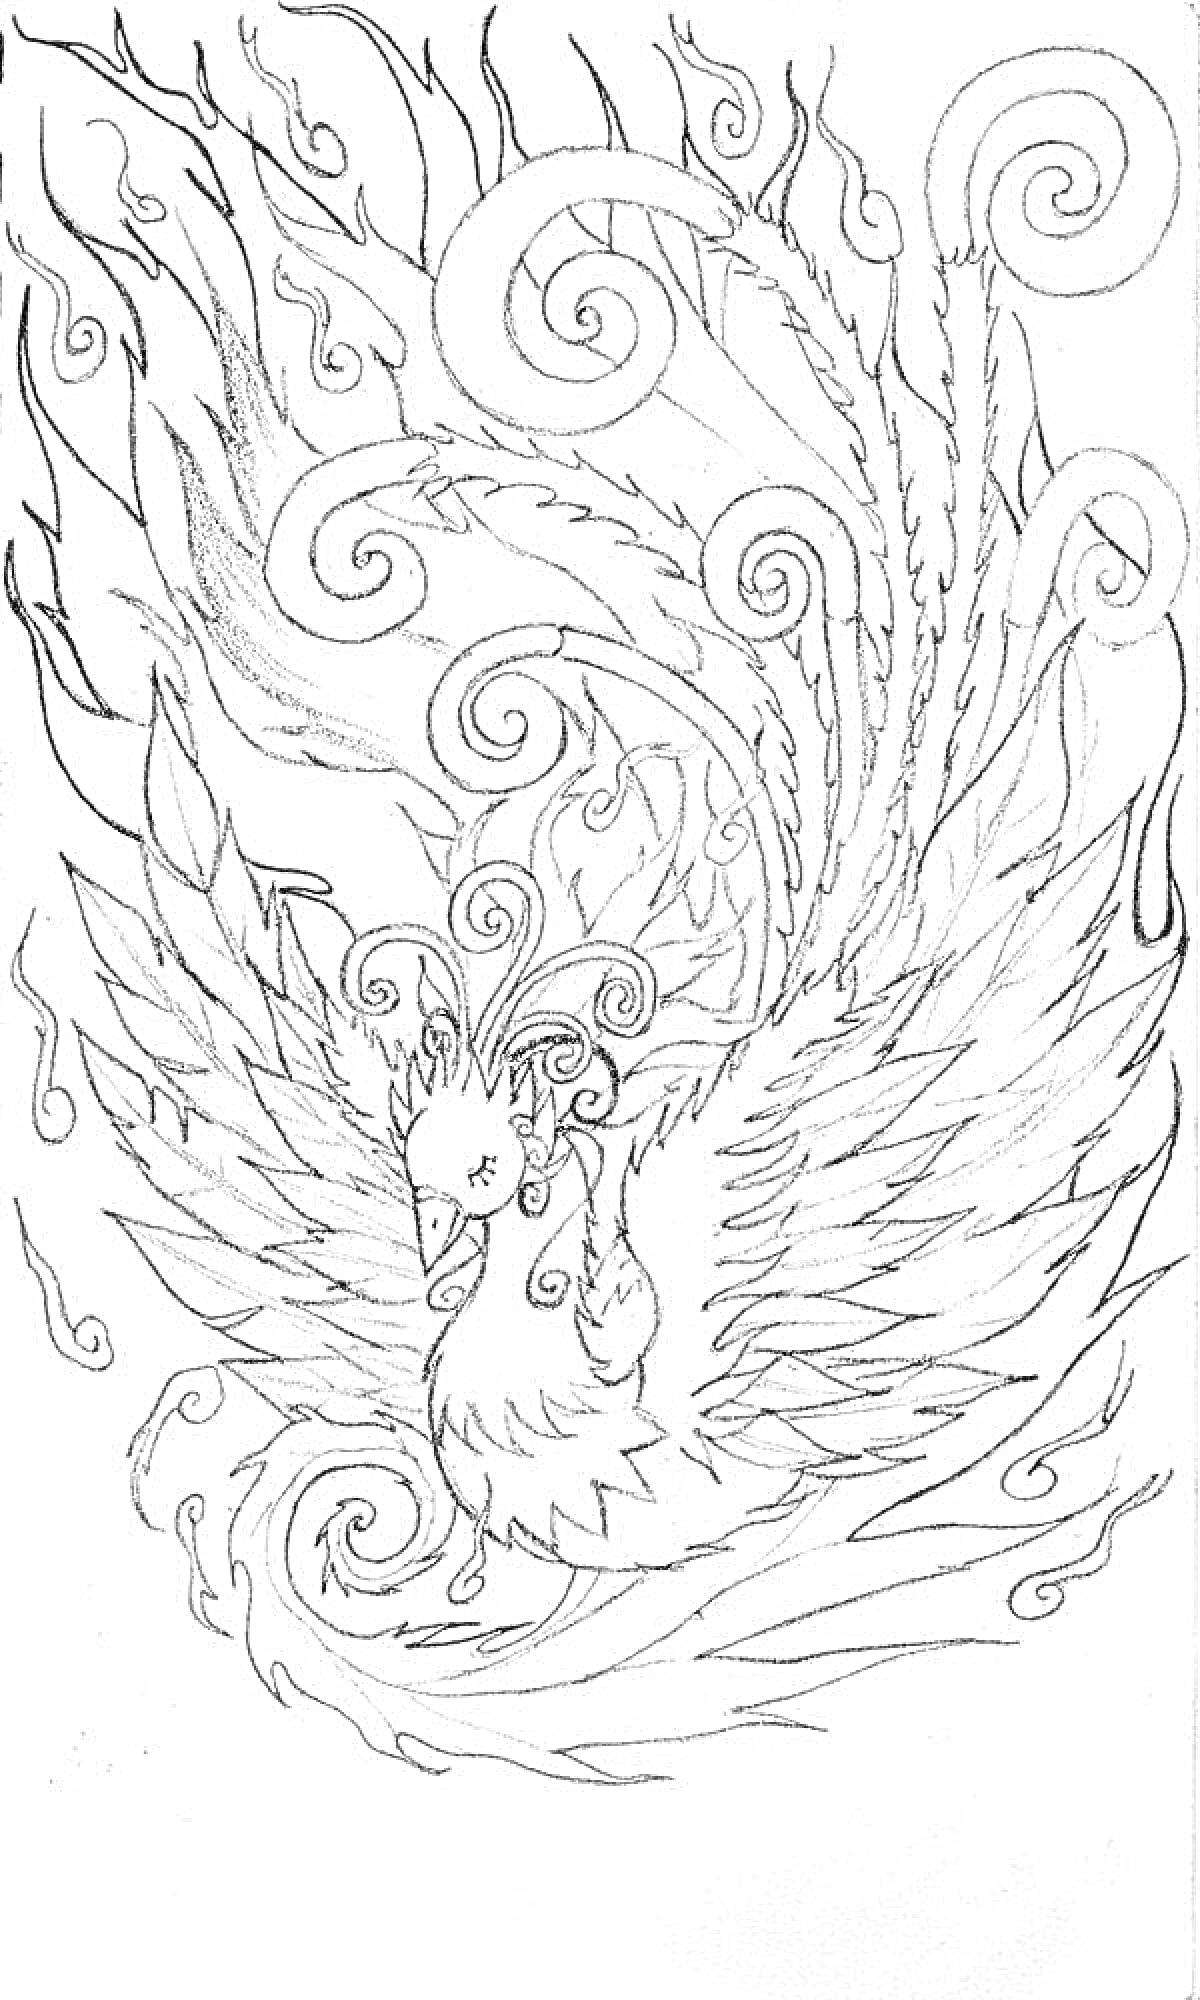 Феникс с распростертыми крыльями на фоне огненных завитков и пламени